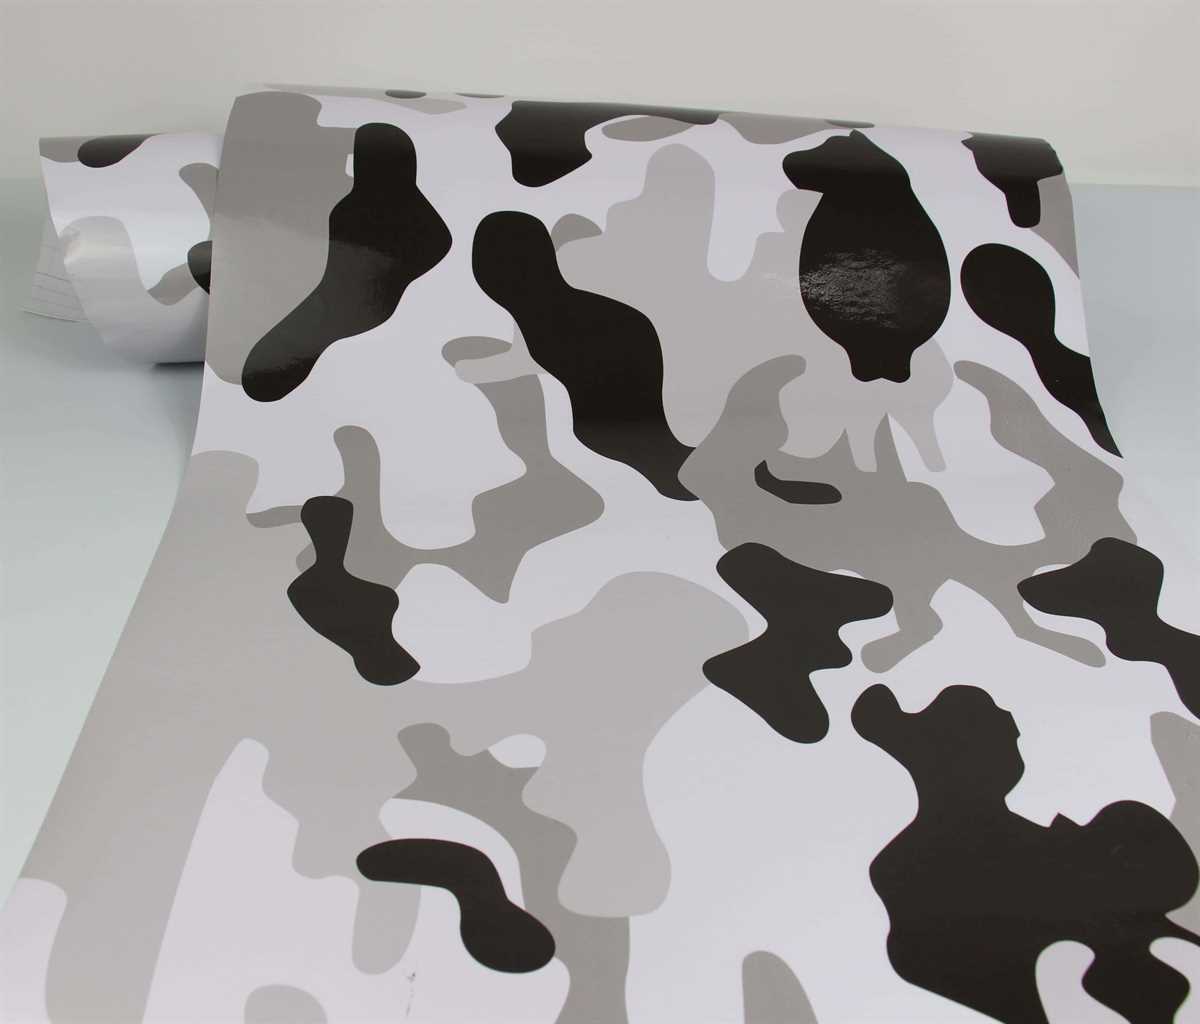 Camouflage Folie 12 x 1.52 meter Luftkanäle Schwarz Weiß Grau Folie #6